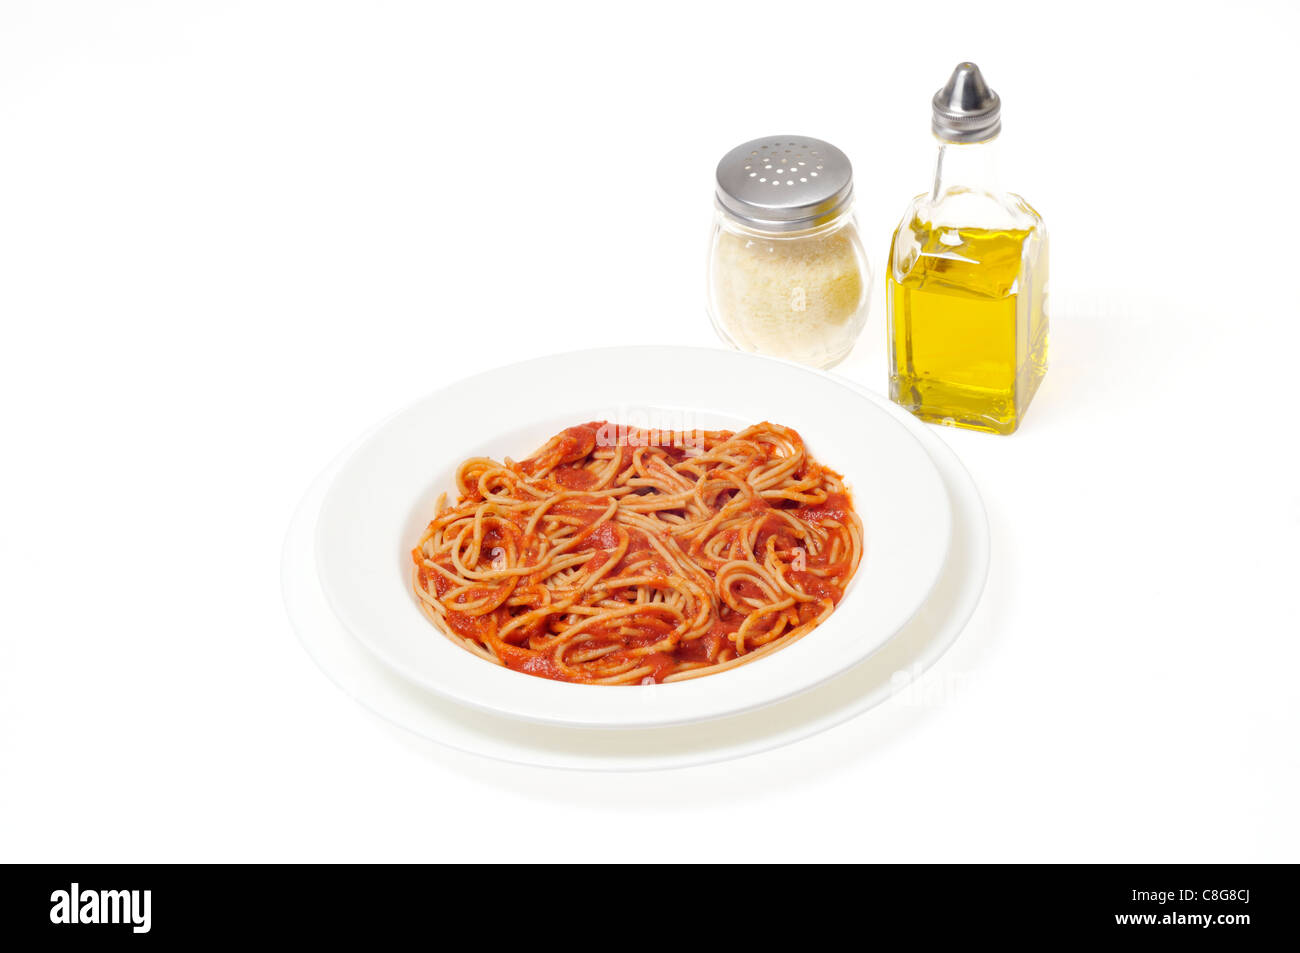 Gekochte Vollkorn Spaghetti in Weiß Schüssel mit Gewürzen Olivenöl und Parmesan jar auf weißem Hintergrund Ausschnitt. Stockfoto